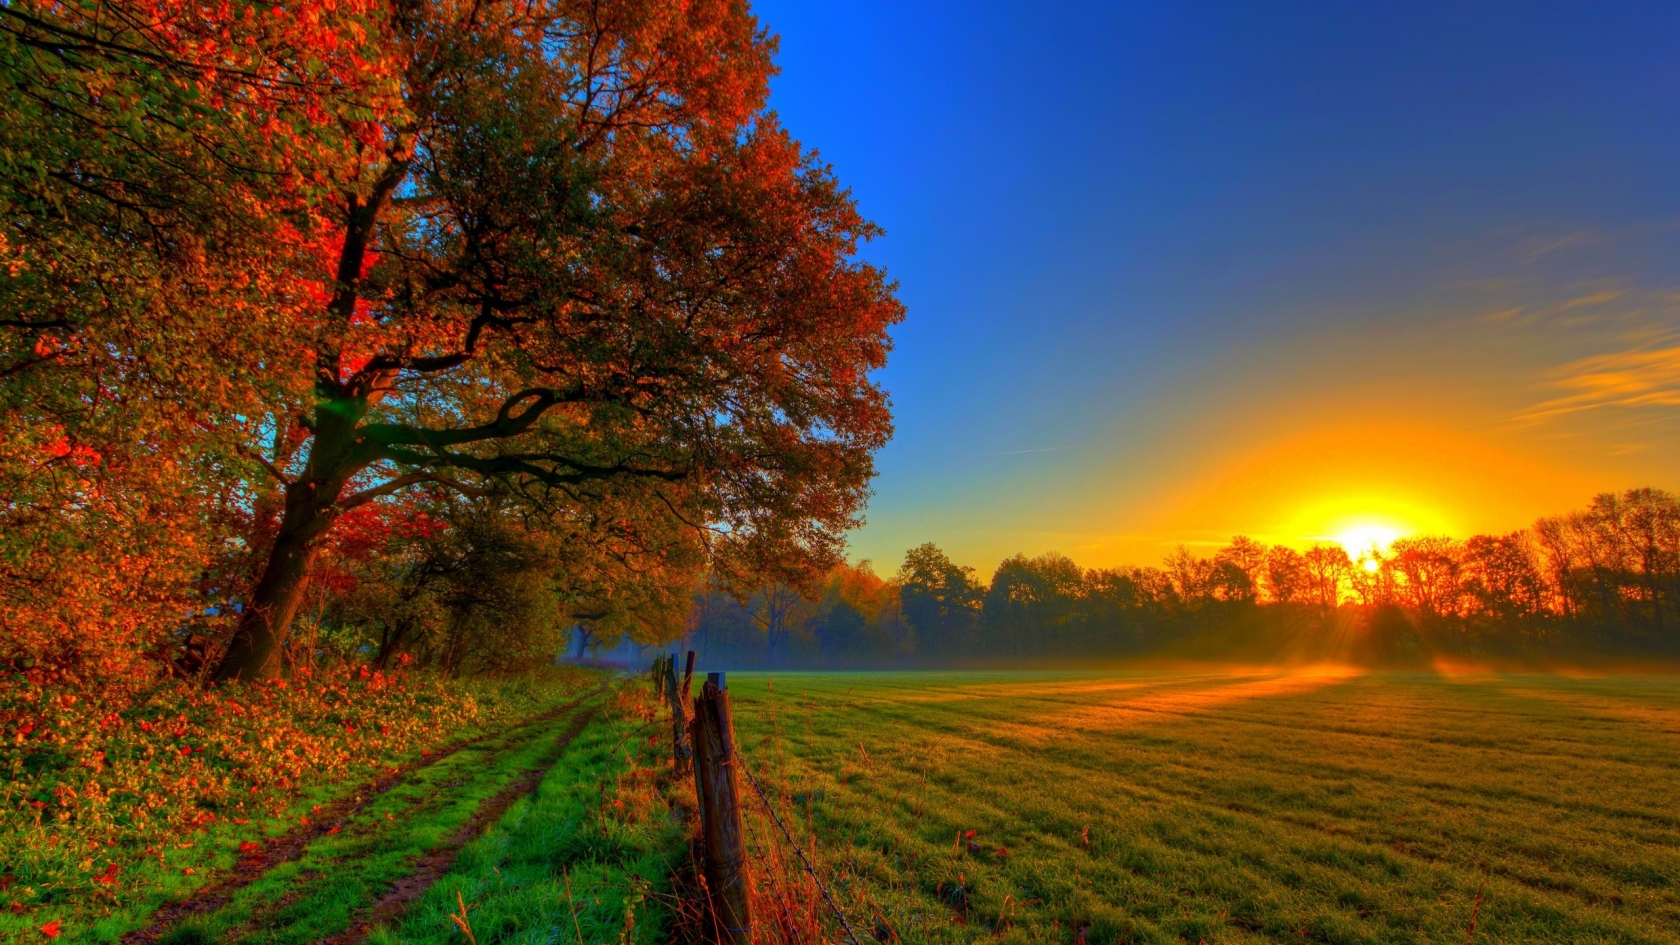 Beautiful Autumn Sunset for 1680 x 945 HDTV resolution